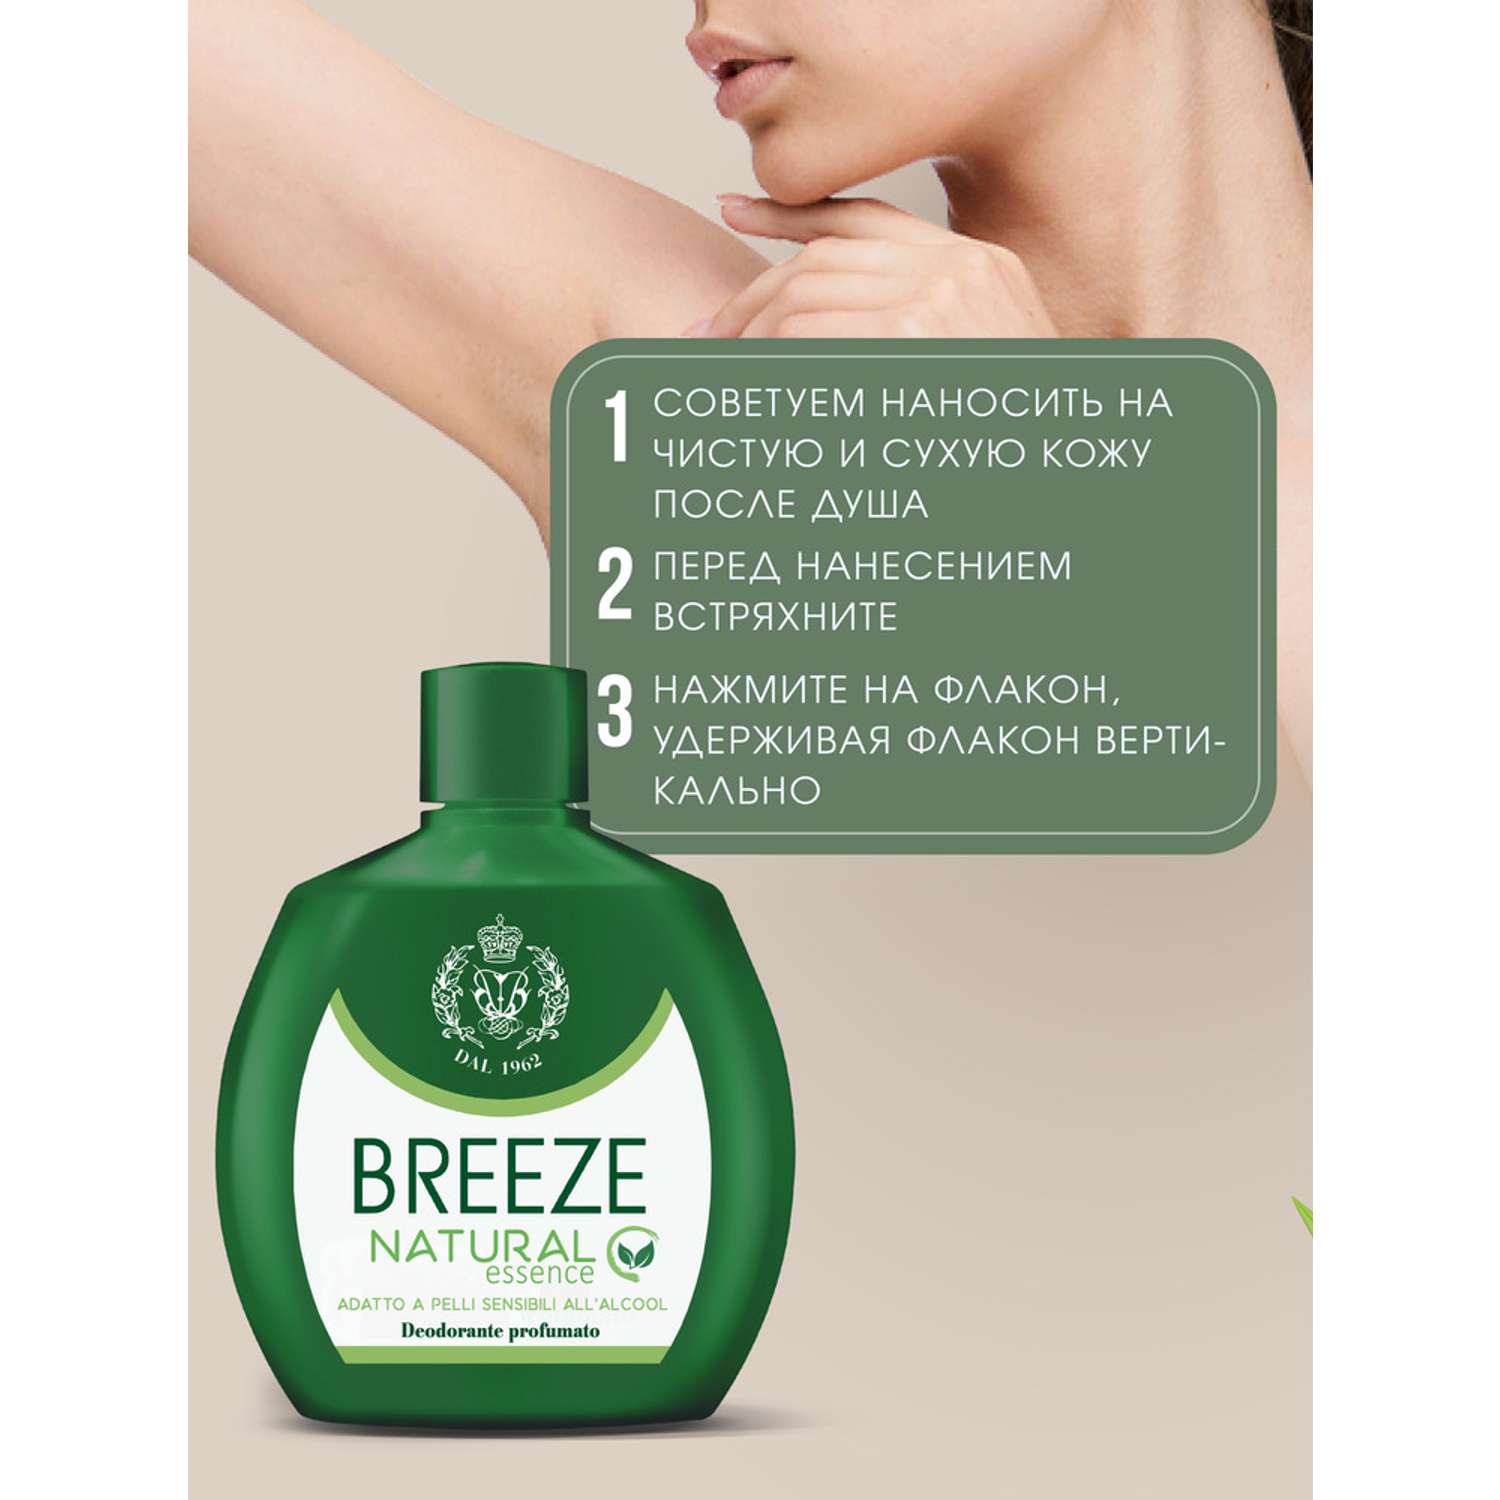 Дезодорант парфюмированный BREEZE natural essence 100мл - фото 2